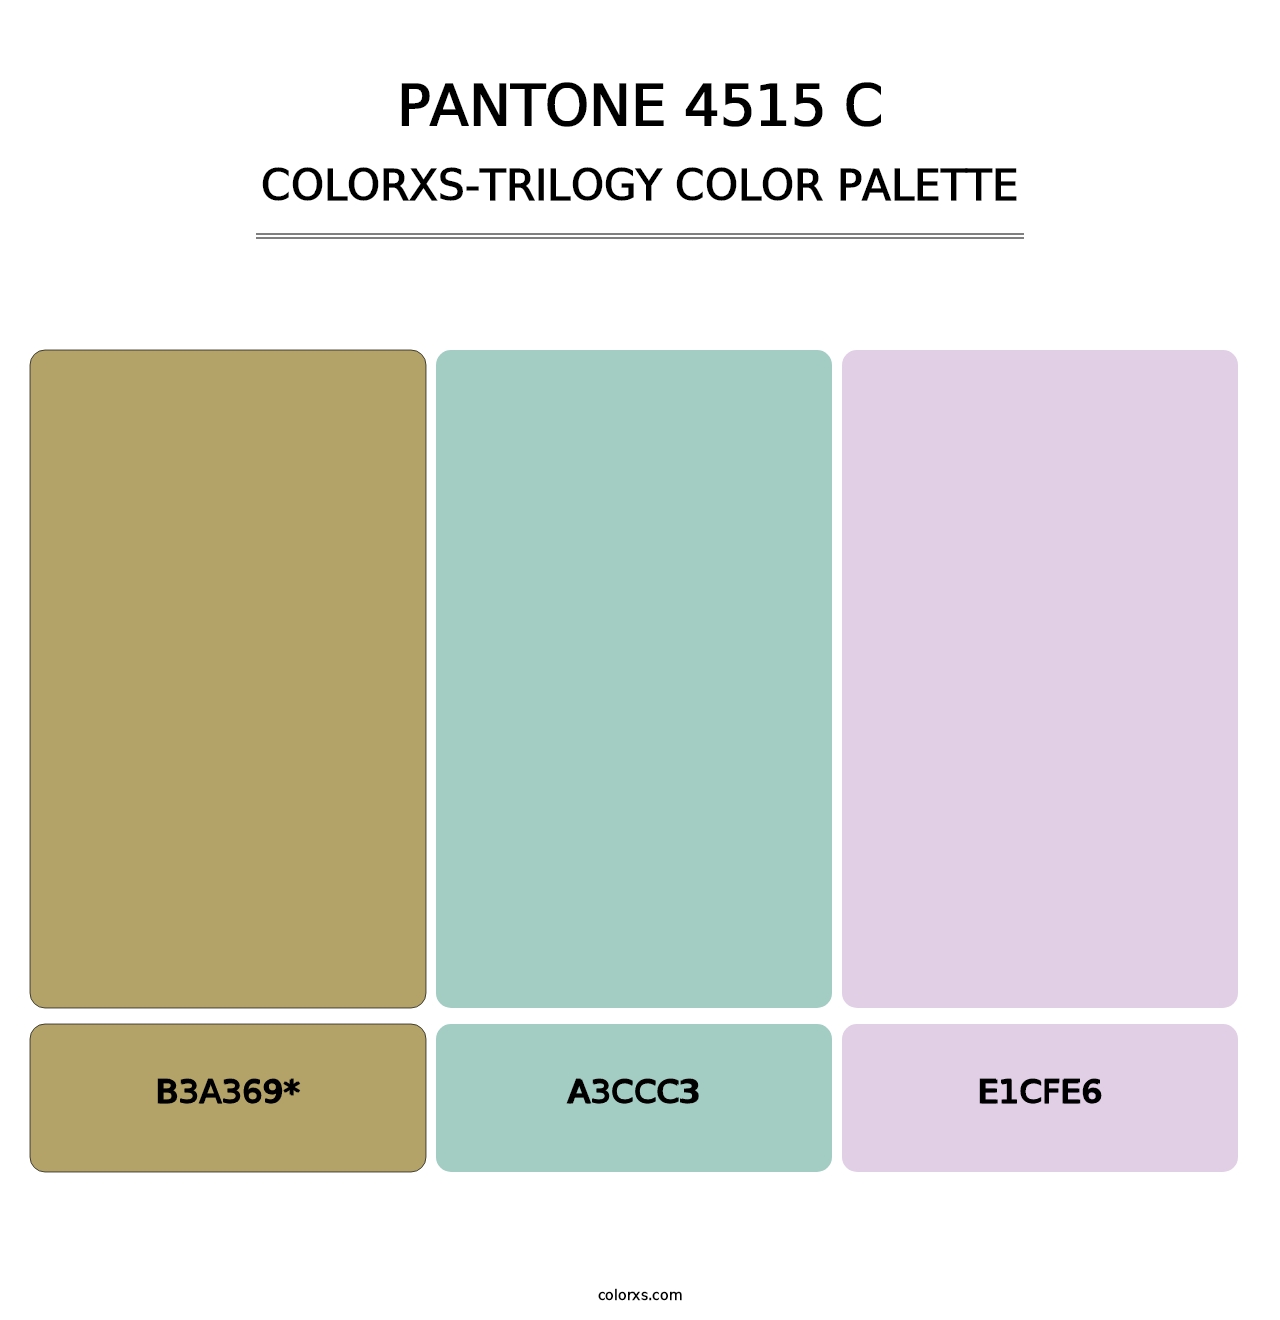 PANTONE 4515 C - Colorxs Trilogy Palette